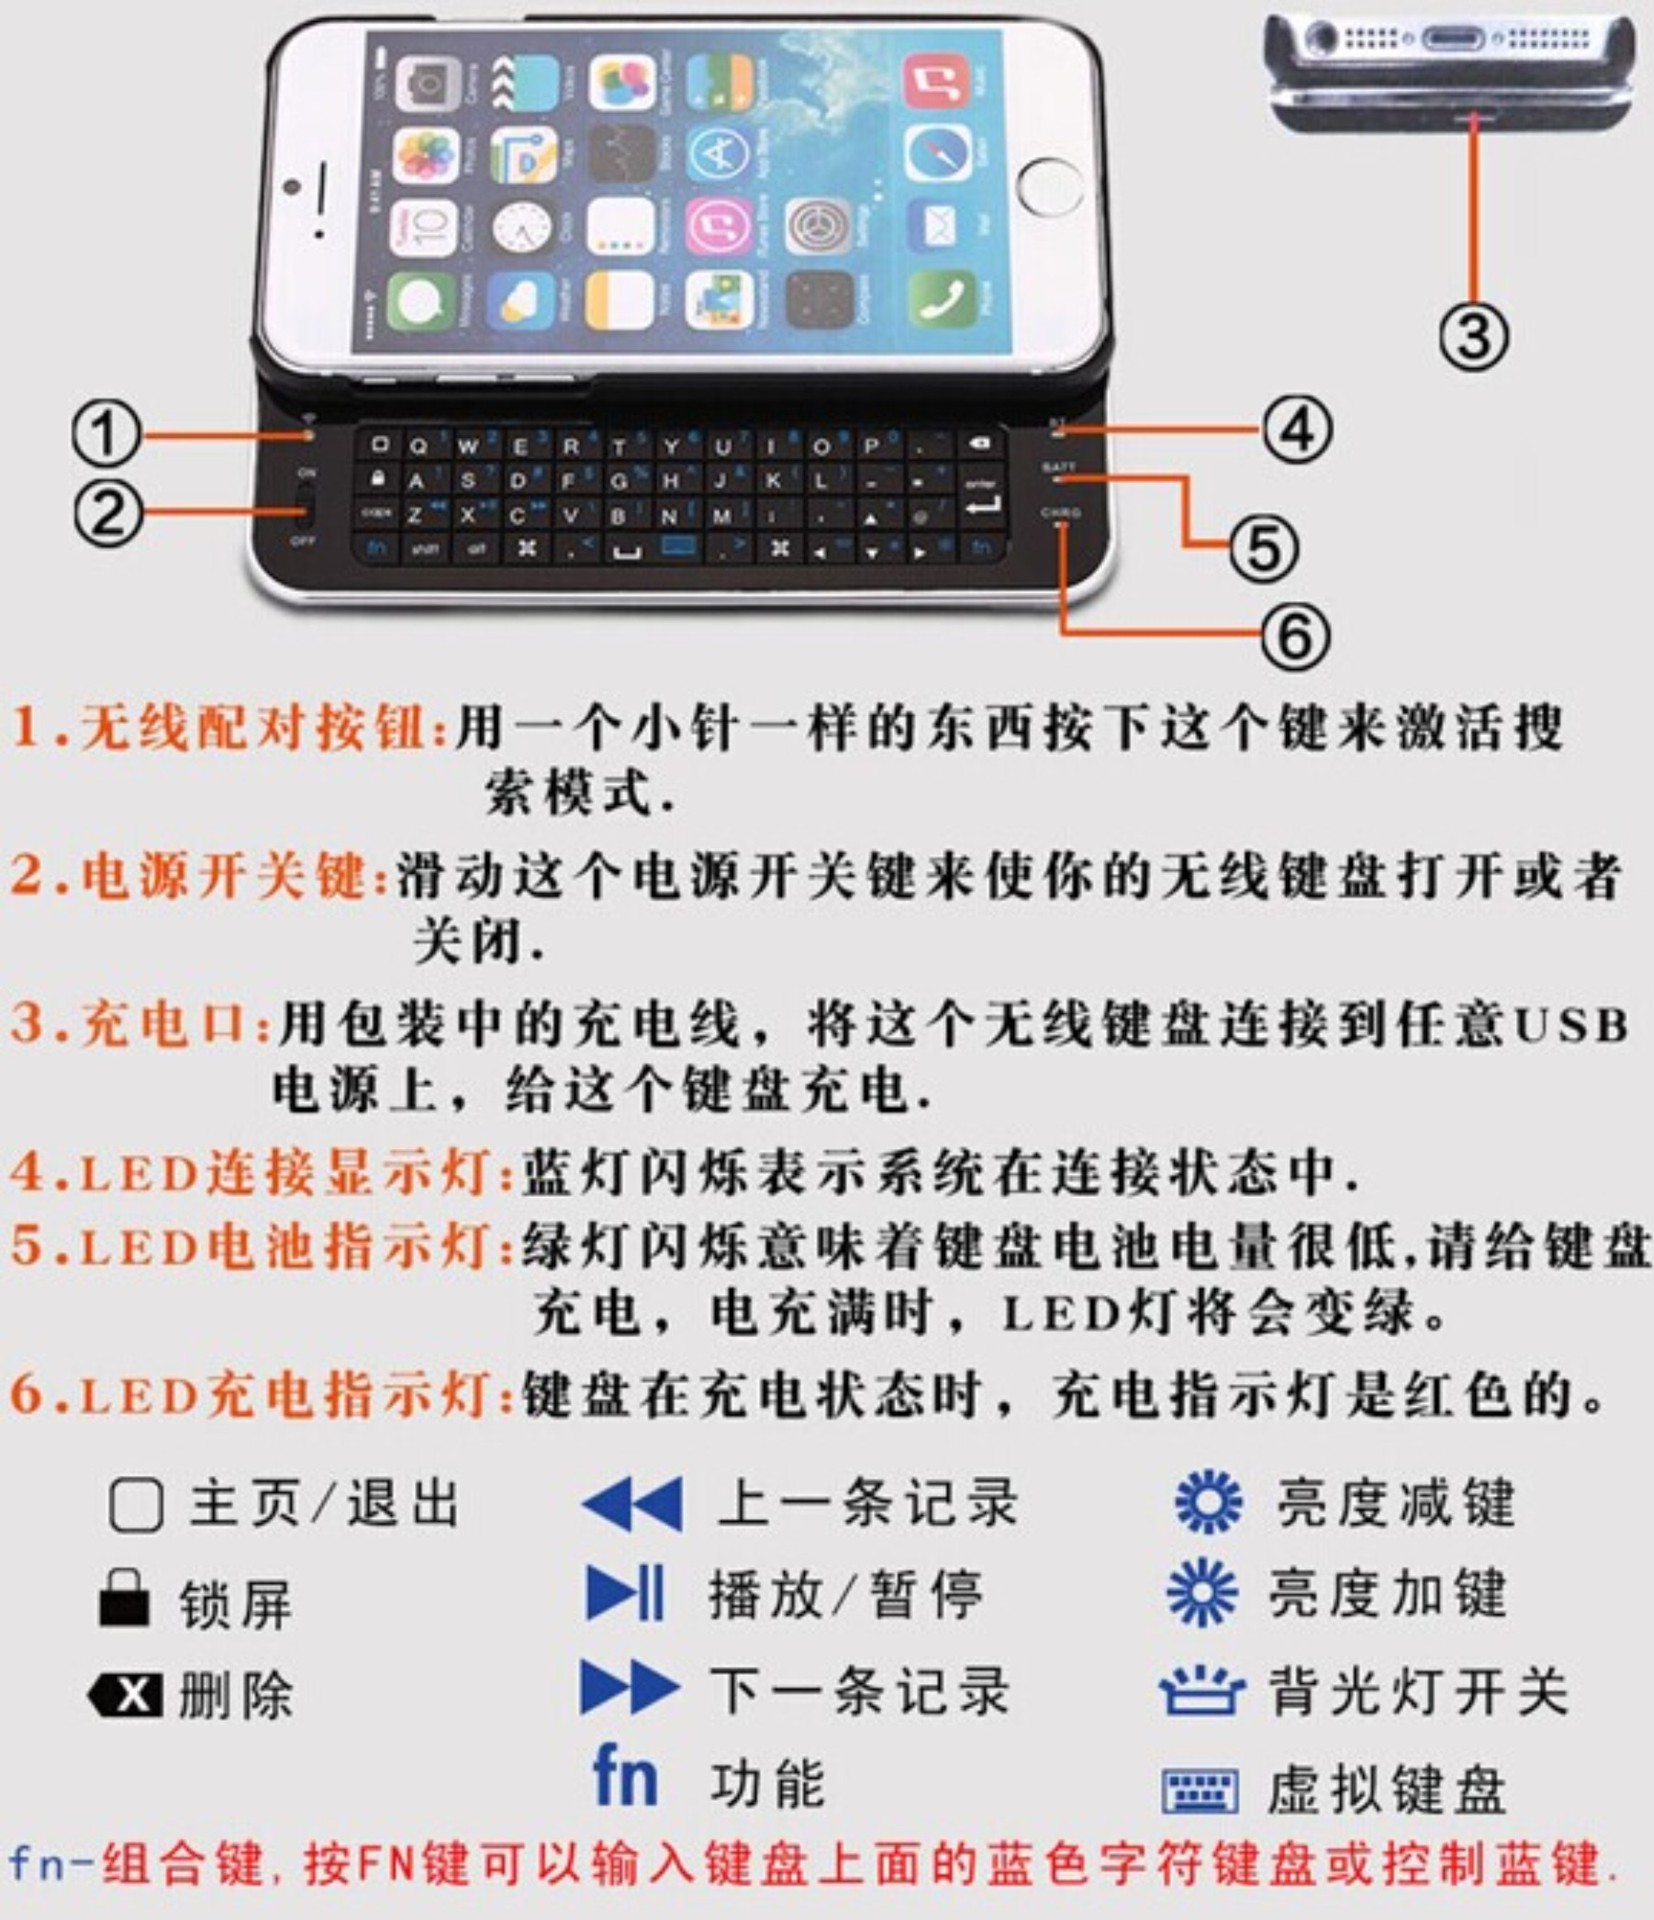 厂家批发/供应iphone6苹果侧滑键盘 便携键盘 超薄蓝牙键盘(现货